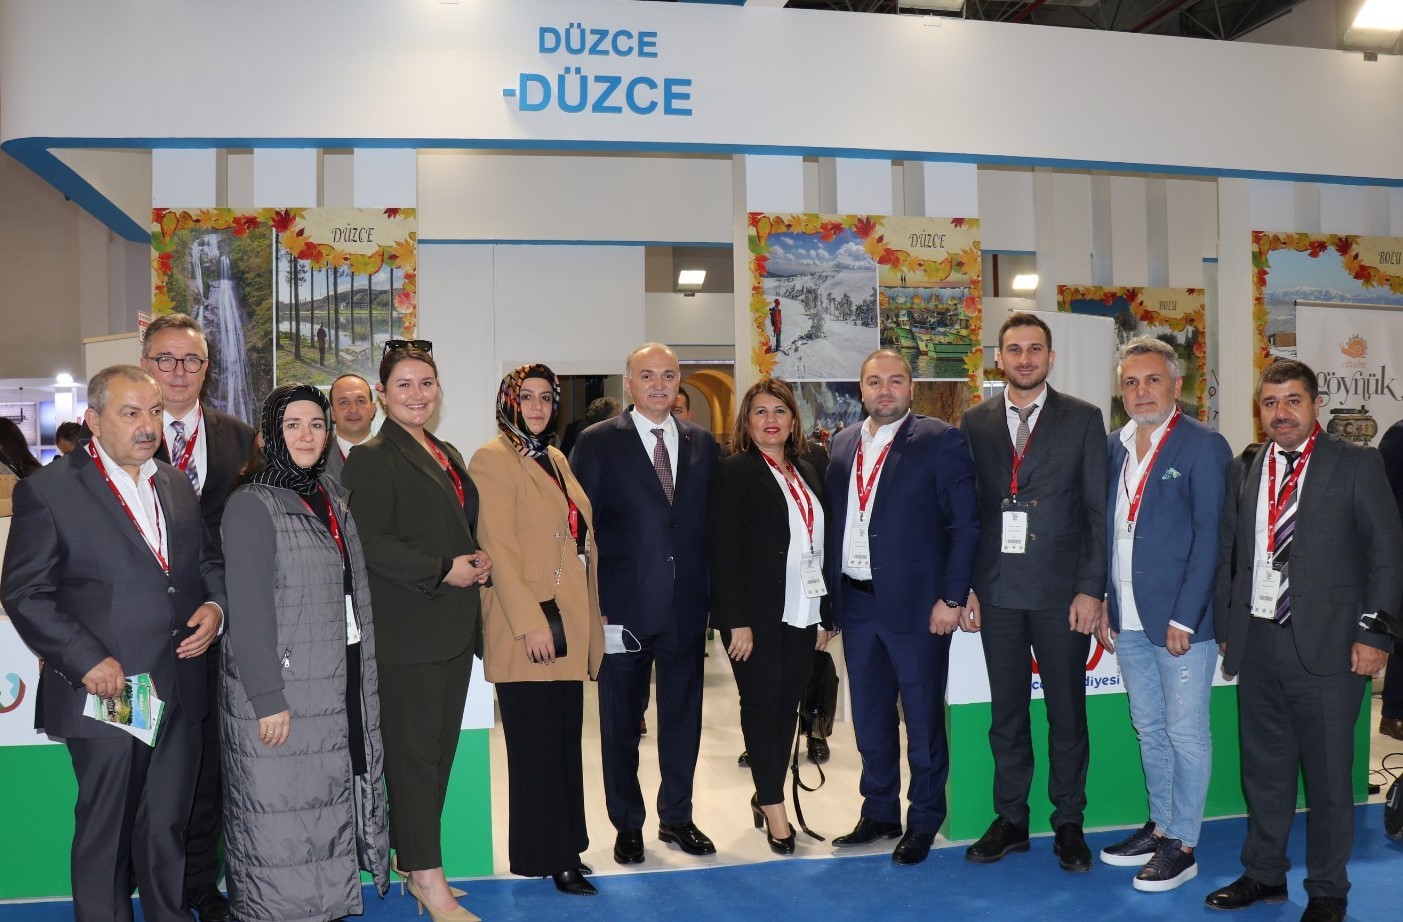 Başkan Özlü İzmir’de Düzce’yi tanıtıyor #duzce